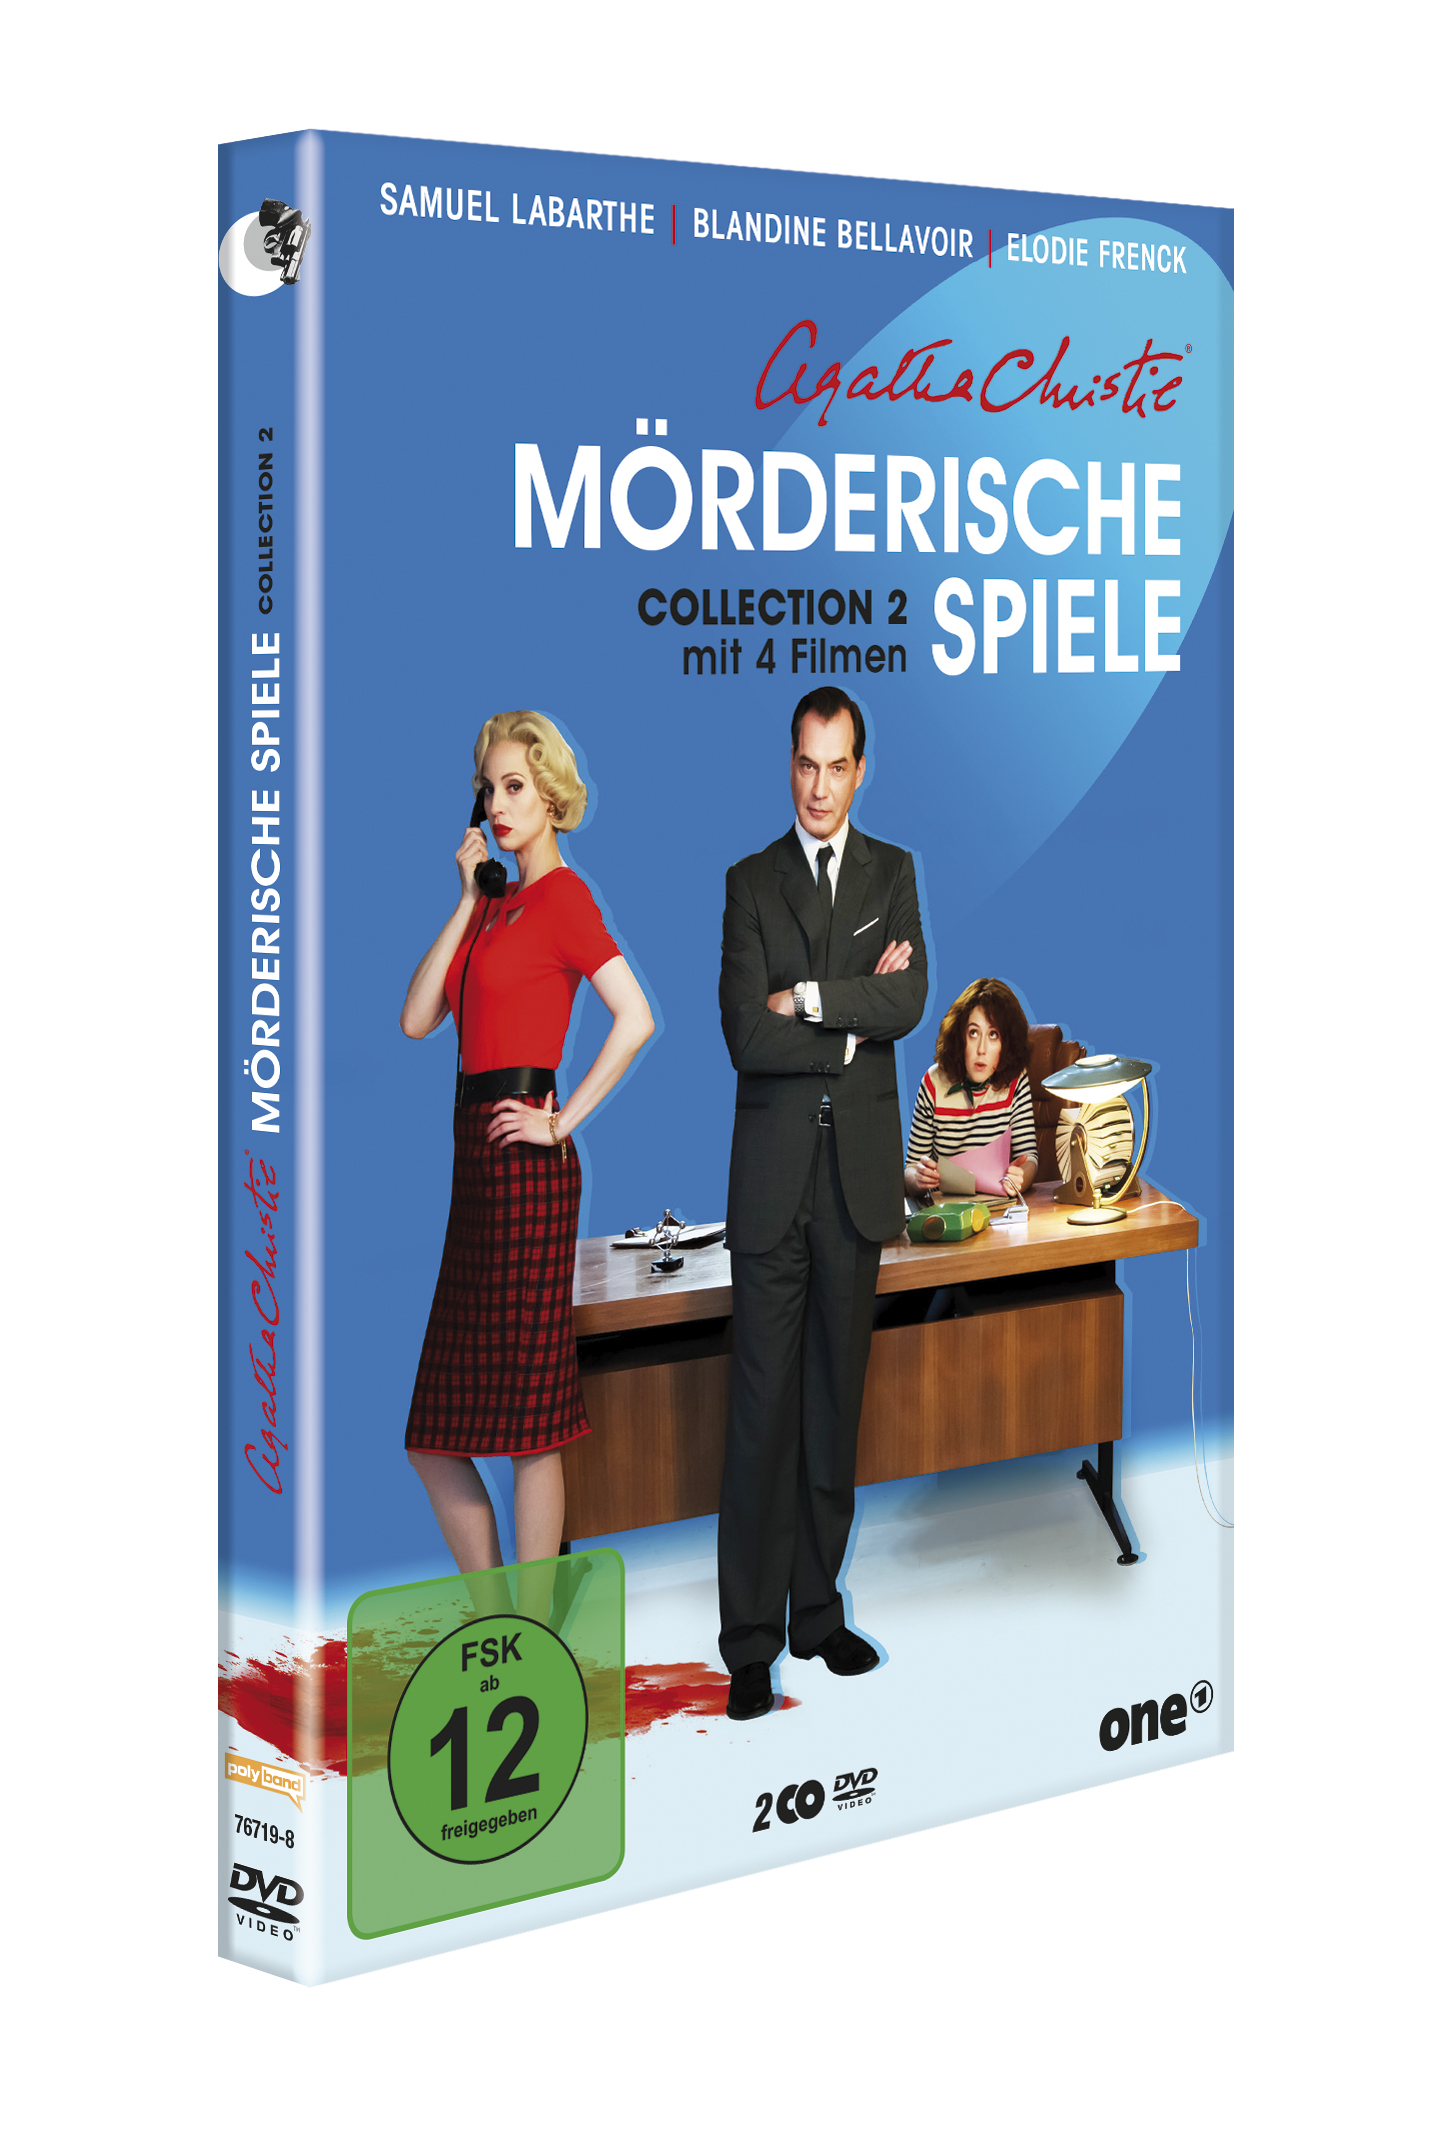 DVD 2. Agatha - Spiele Collection Christie Mörderische